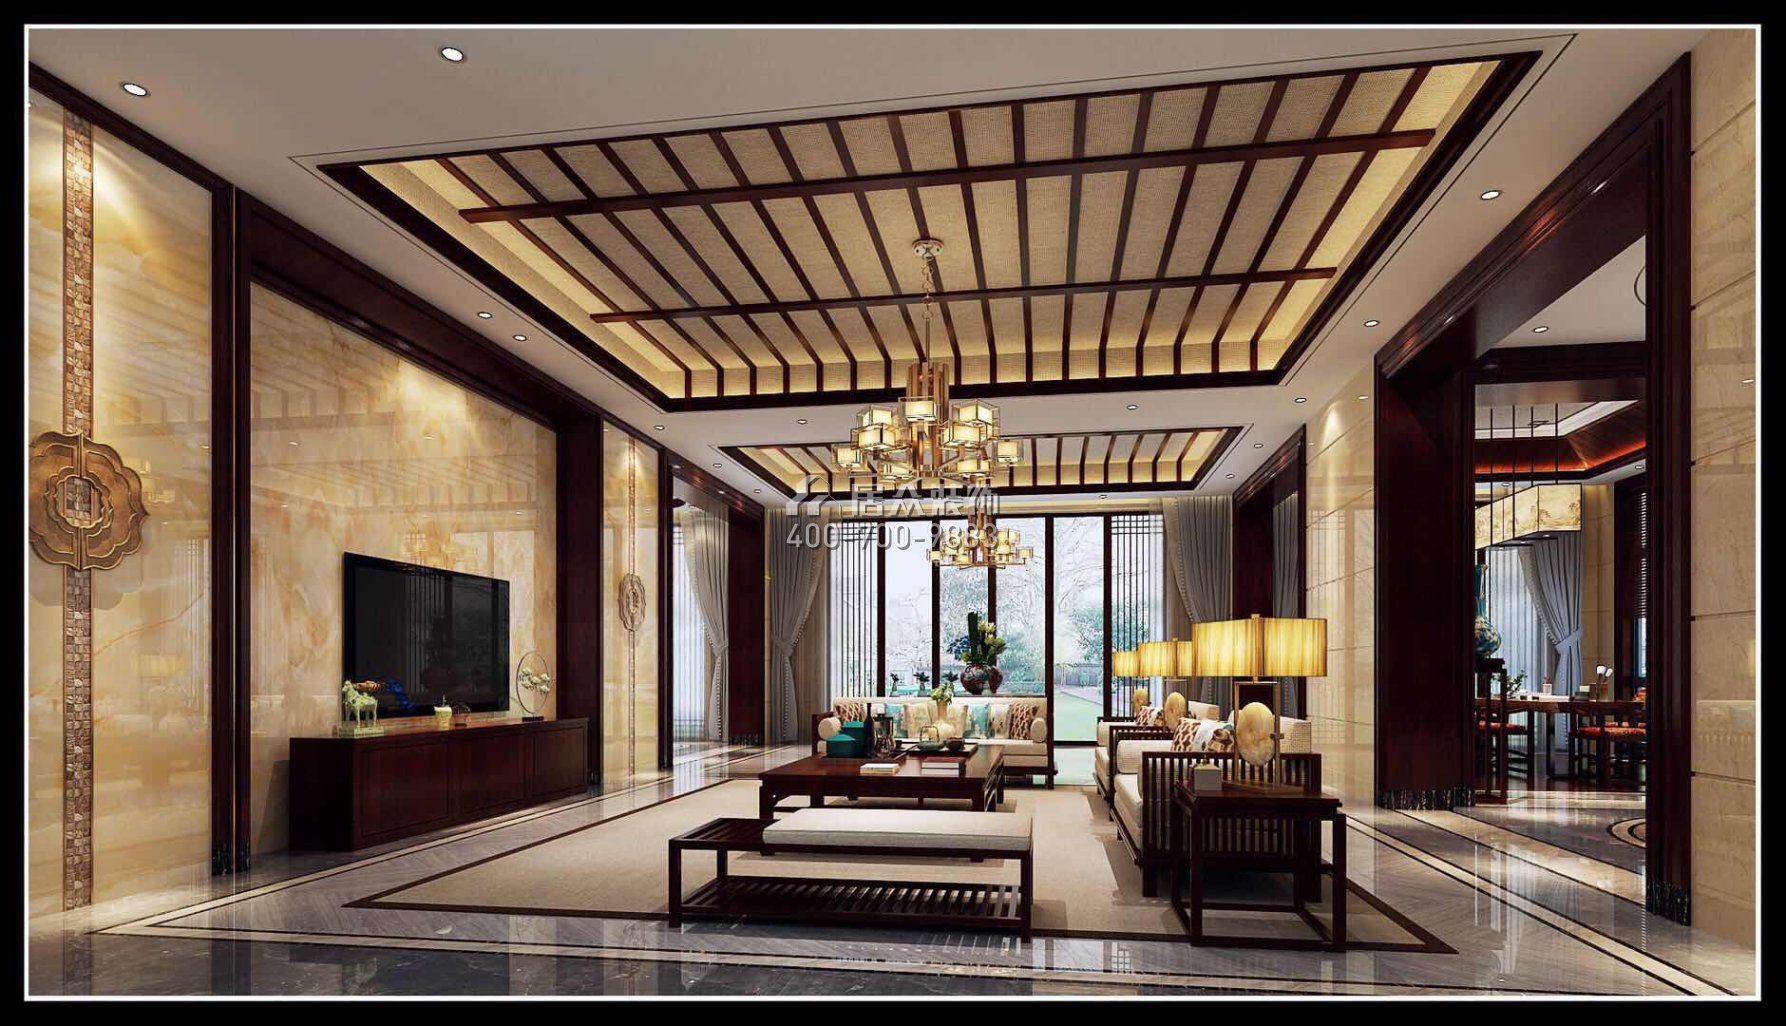 翡翠松山湖800平方米中式风格别墅户型客厅装修效果图